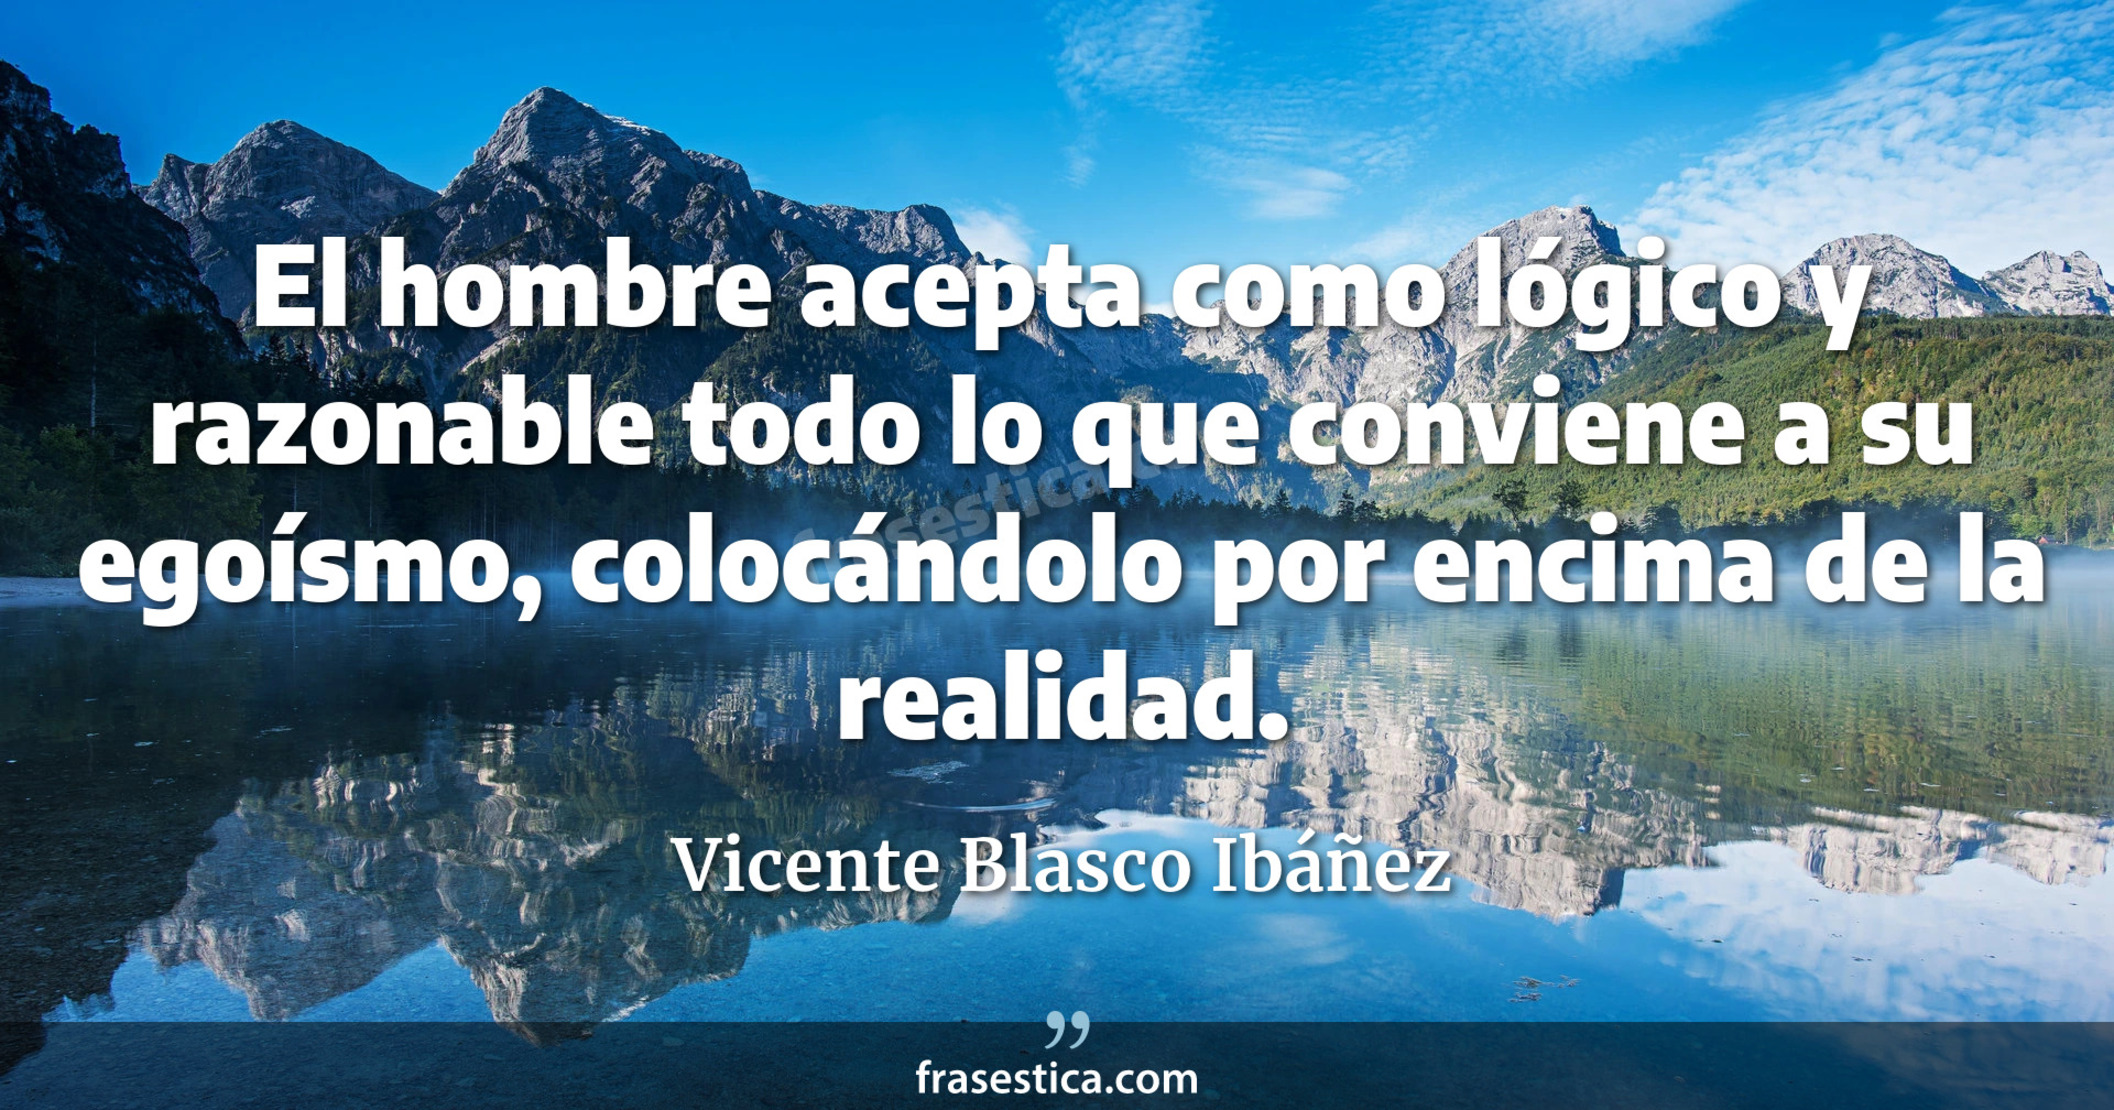 El hombre acepta como lógico y razonable todo lo que conviene a su egoísmo, colocándolo por encima de la realidad. - Vicente Blasco Ibáñez